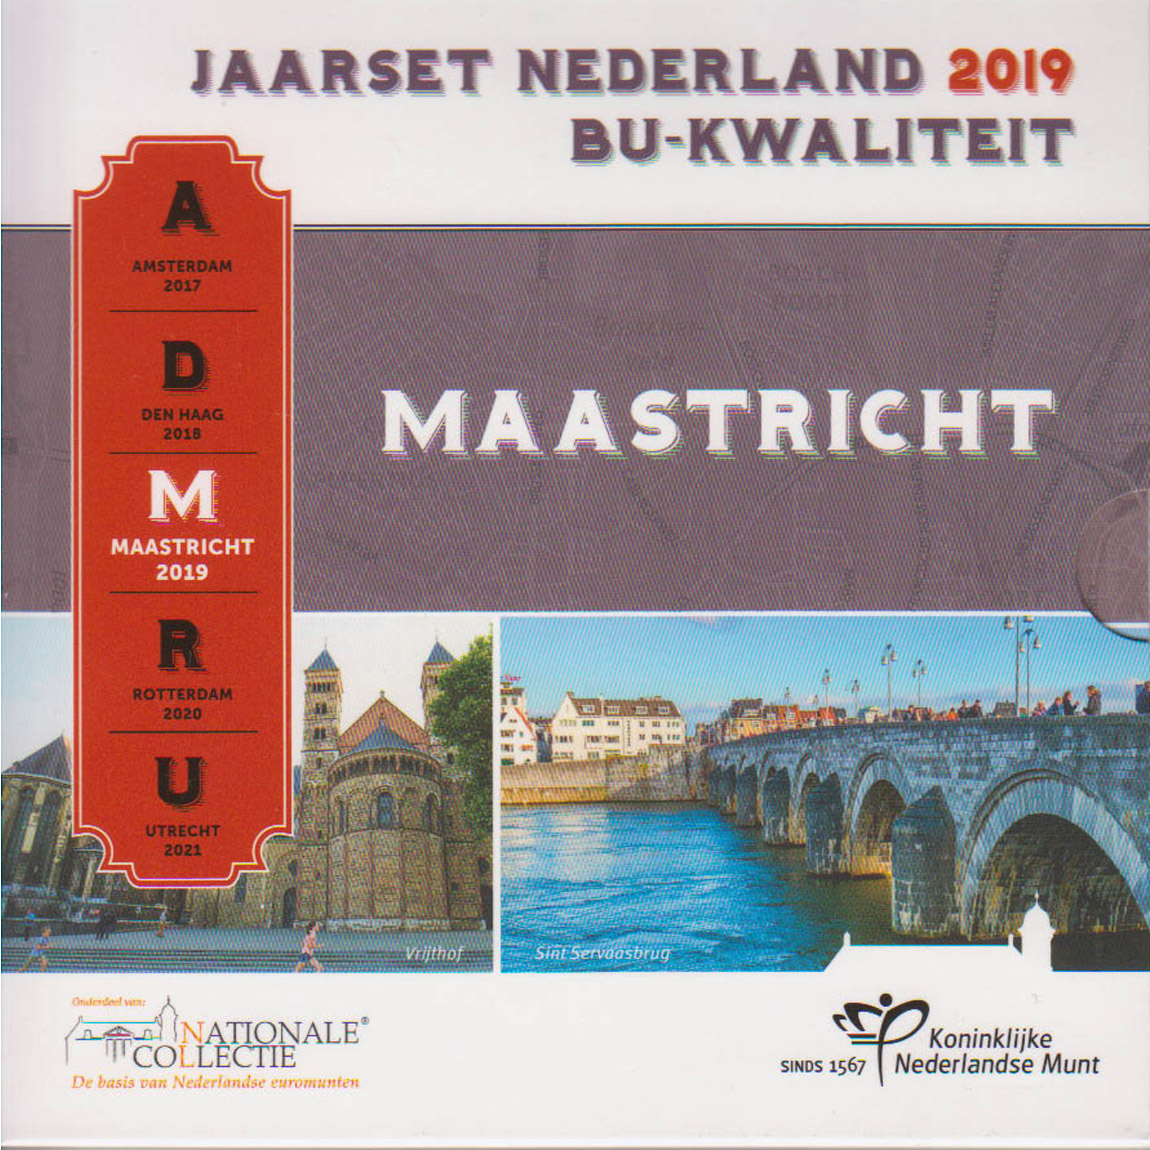  Offiz. KMS Niederlande *Städte in den Niederlanden - Maastricht* 2019 nur 12.500St! Mz Brücke!   